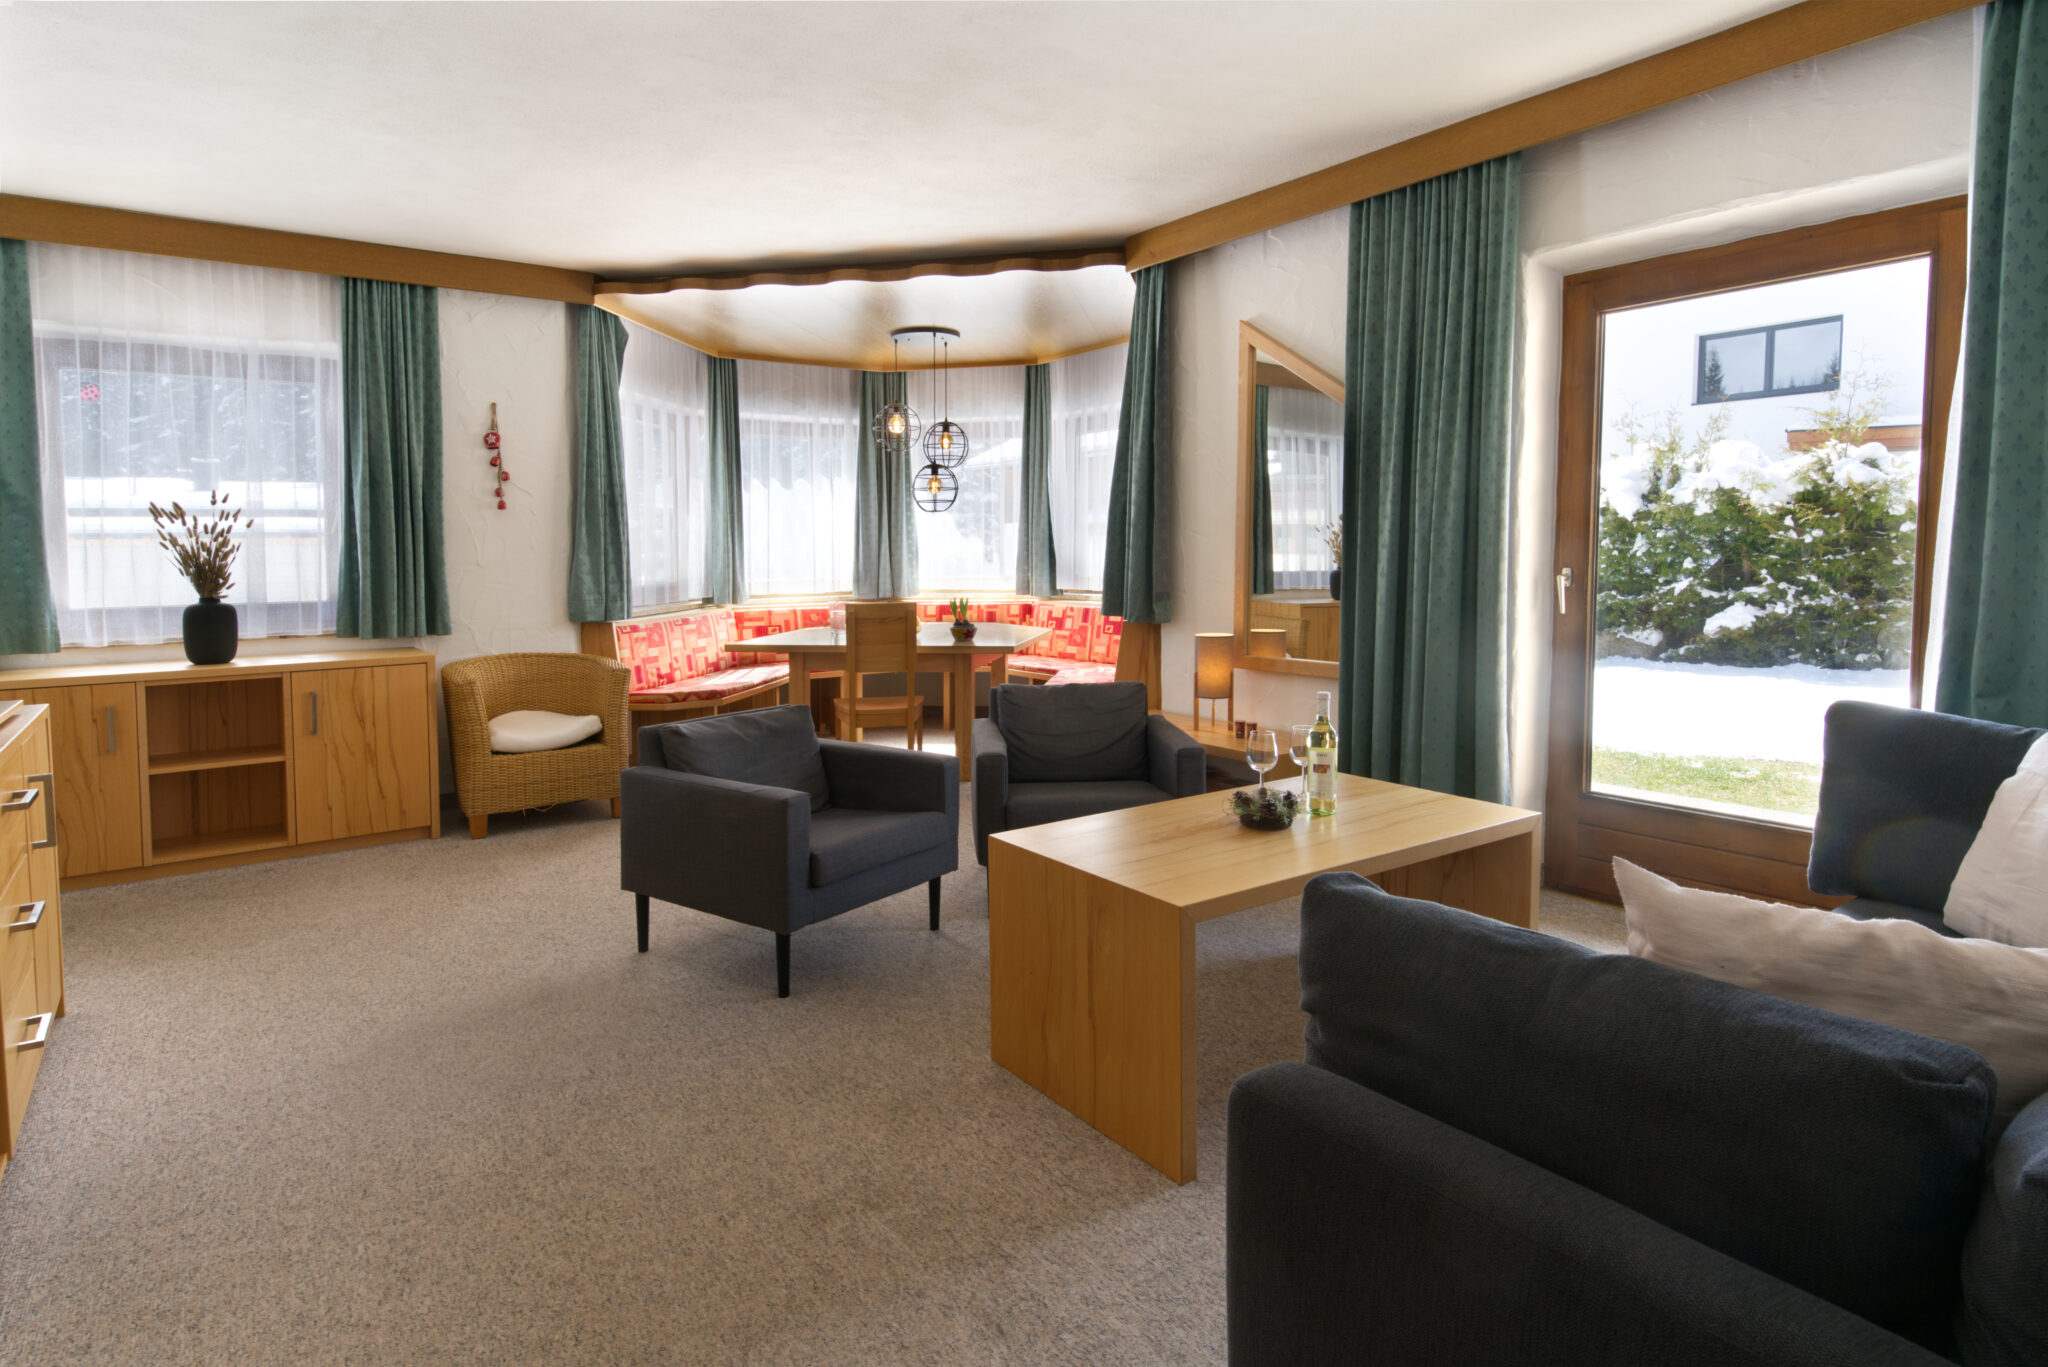 Appartementenhuis Ostbacher Stern in Tirol Oostenrijk (Woning type C)  met 1 slaapkamer met douche of ligbad